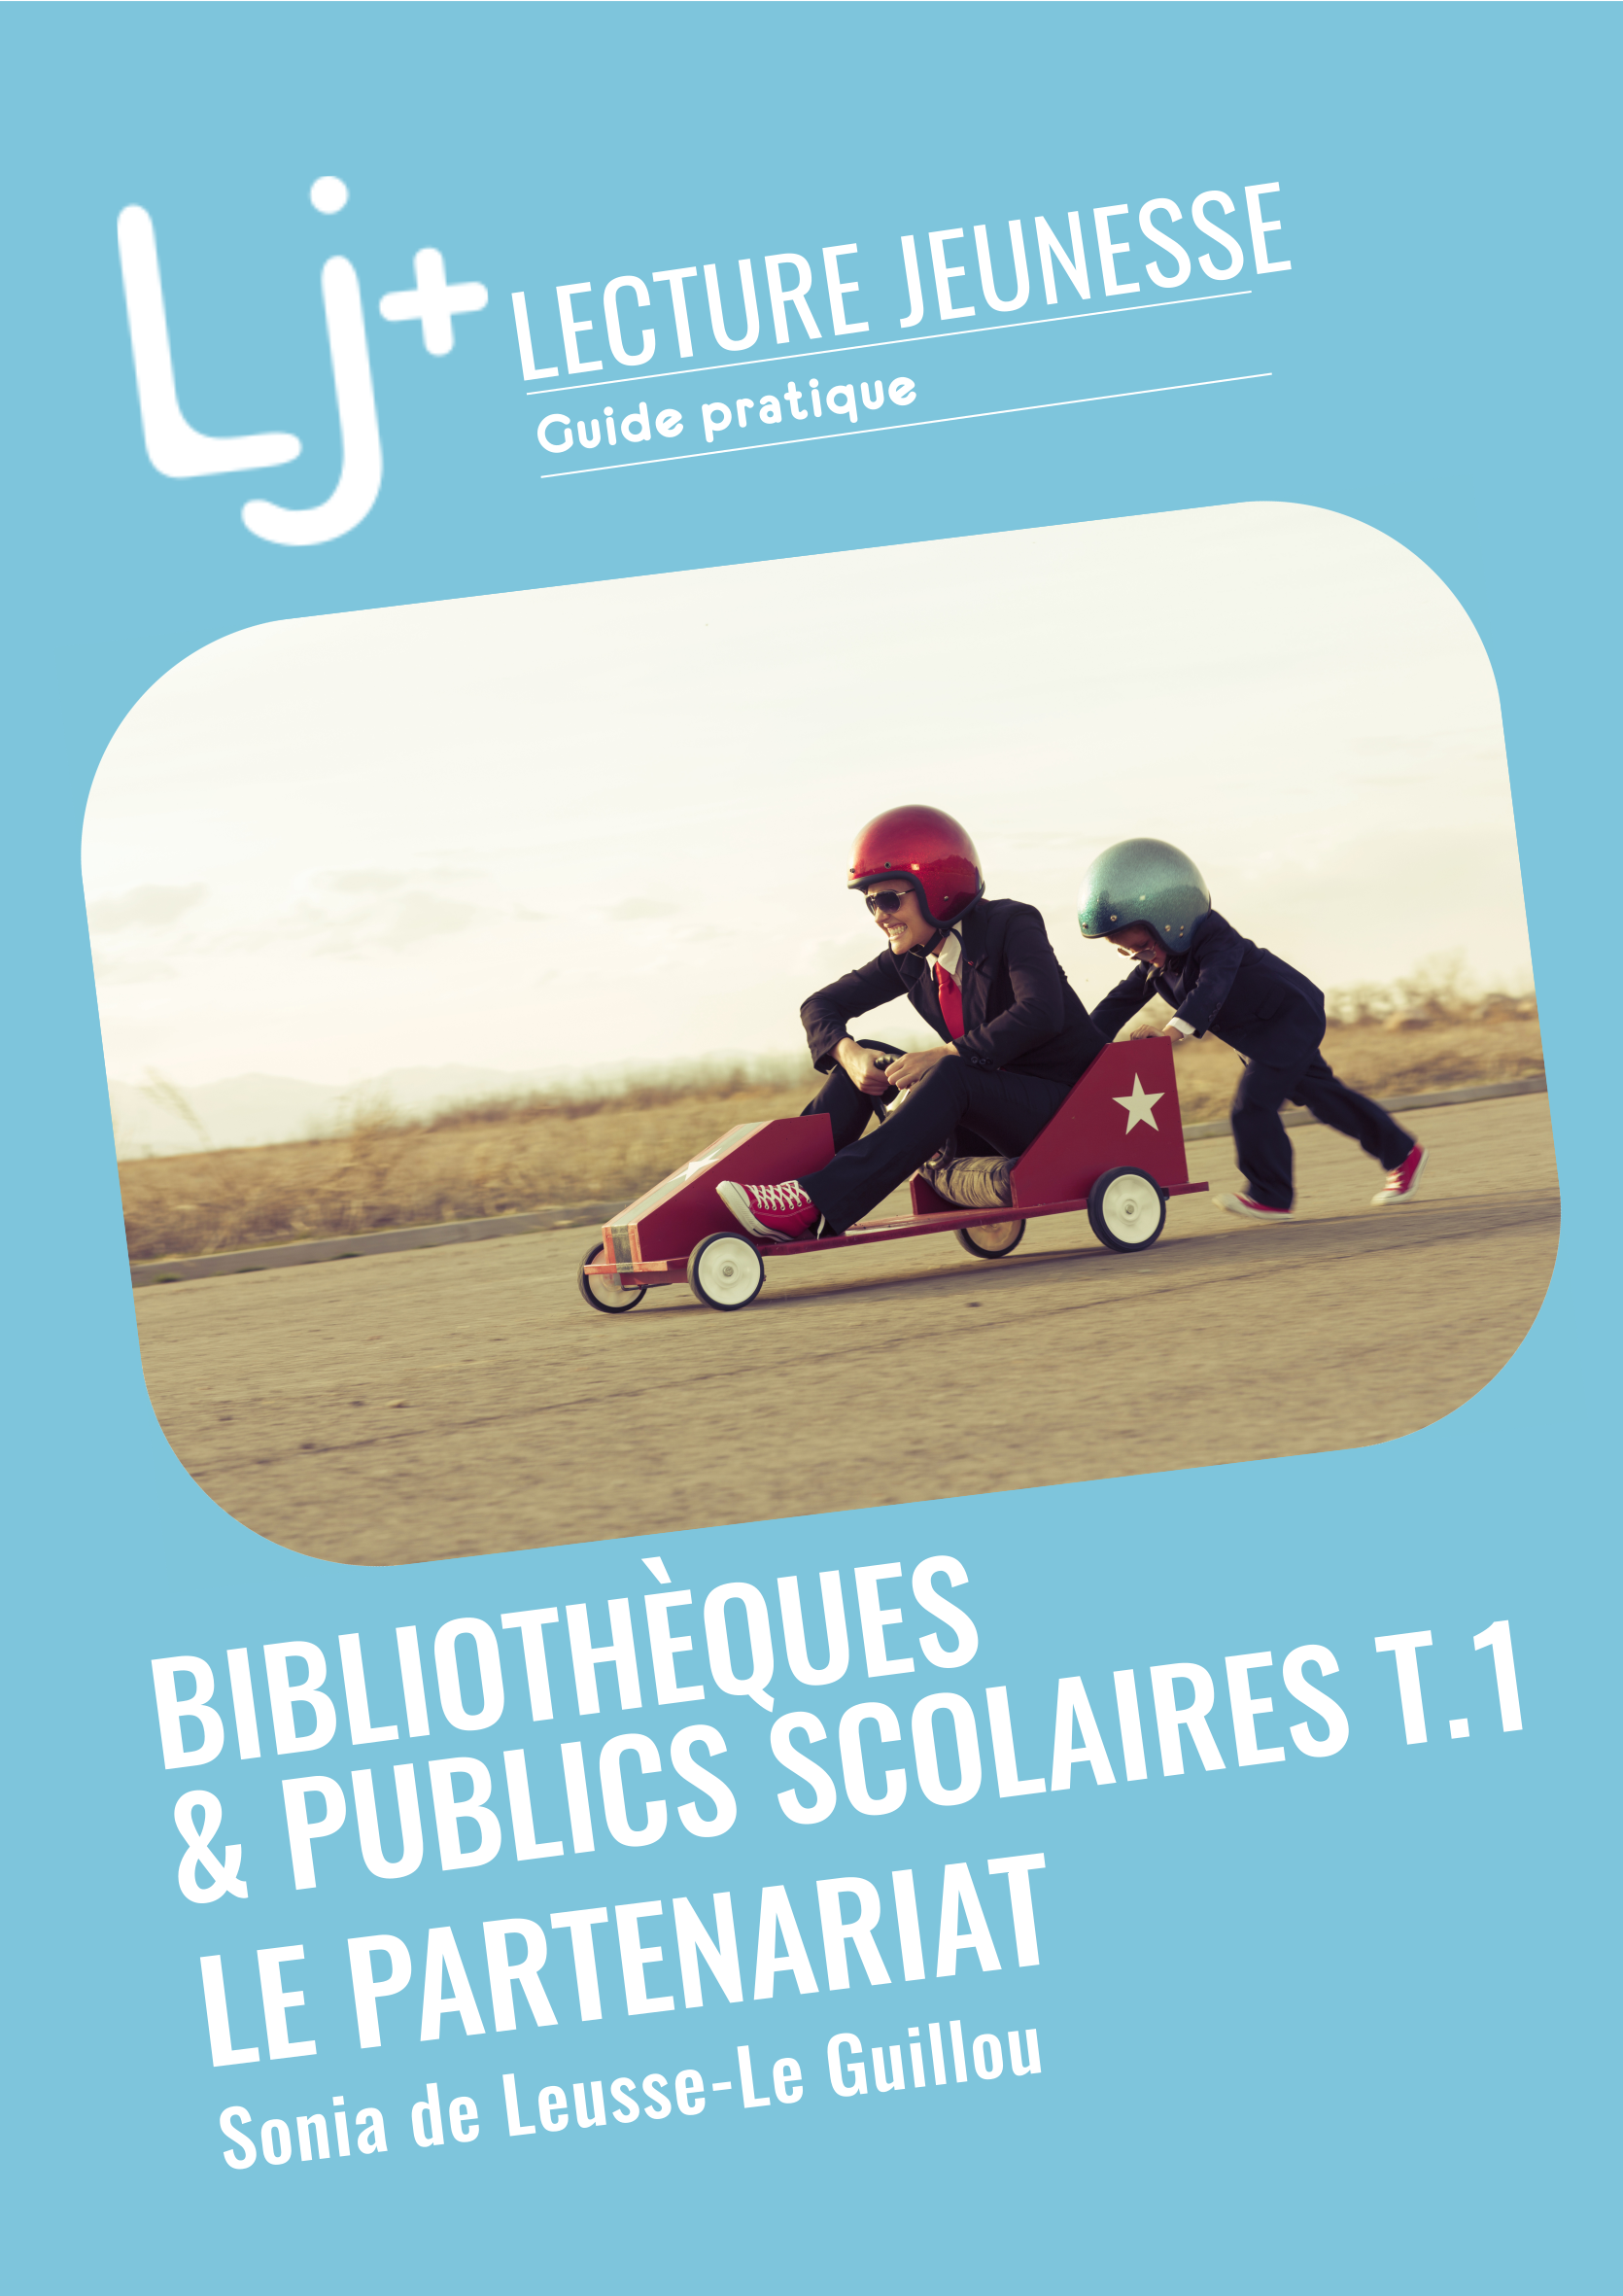 Guide pratique Bibliothèques & publics scolaires T1. Le partenariat